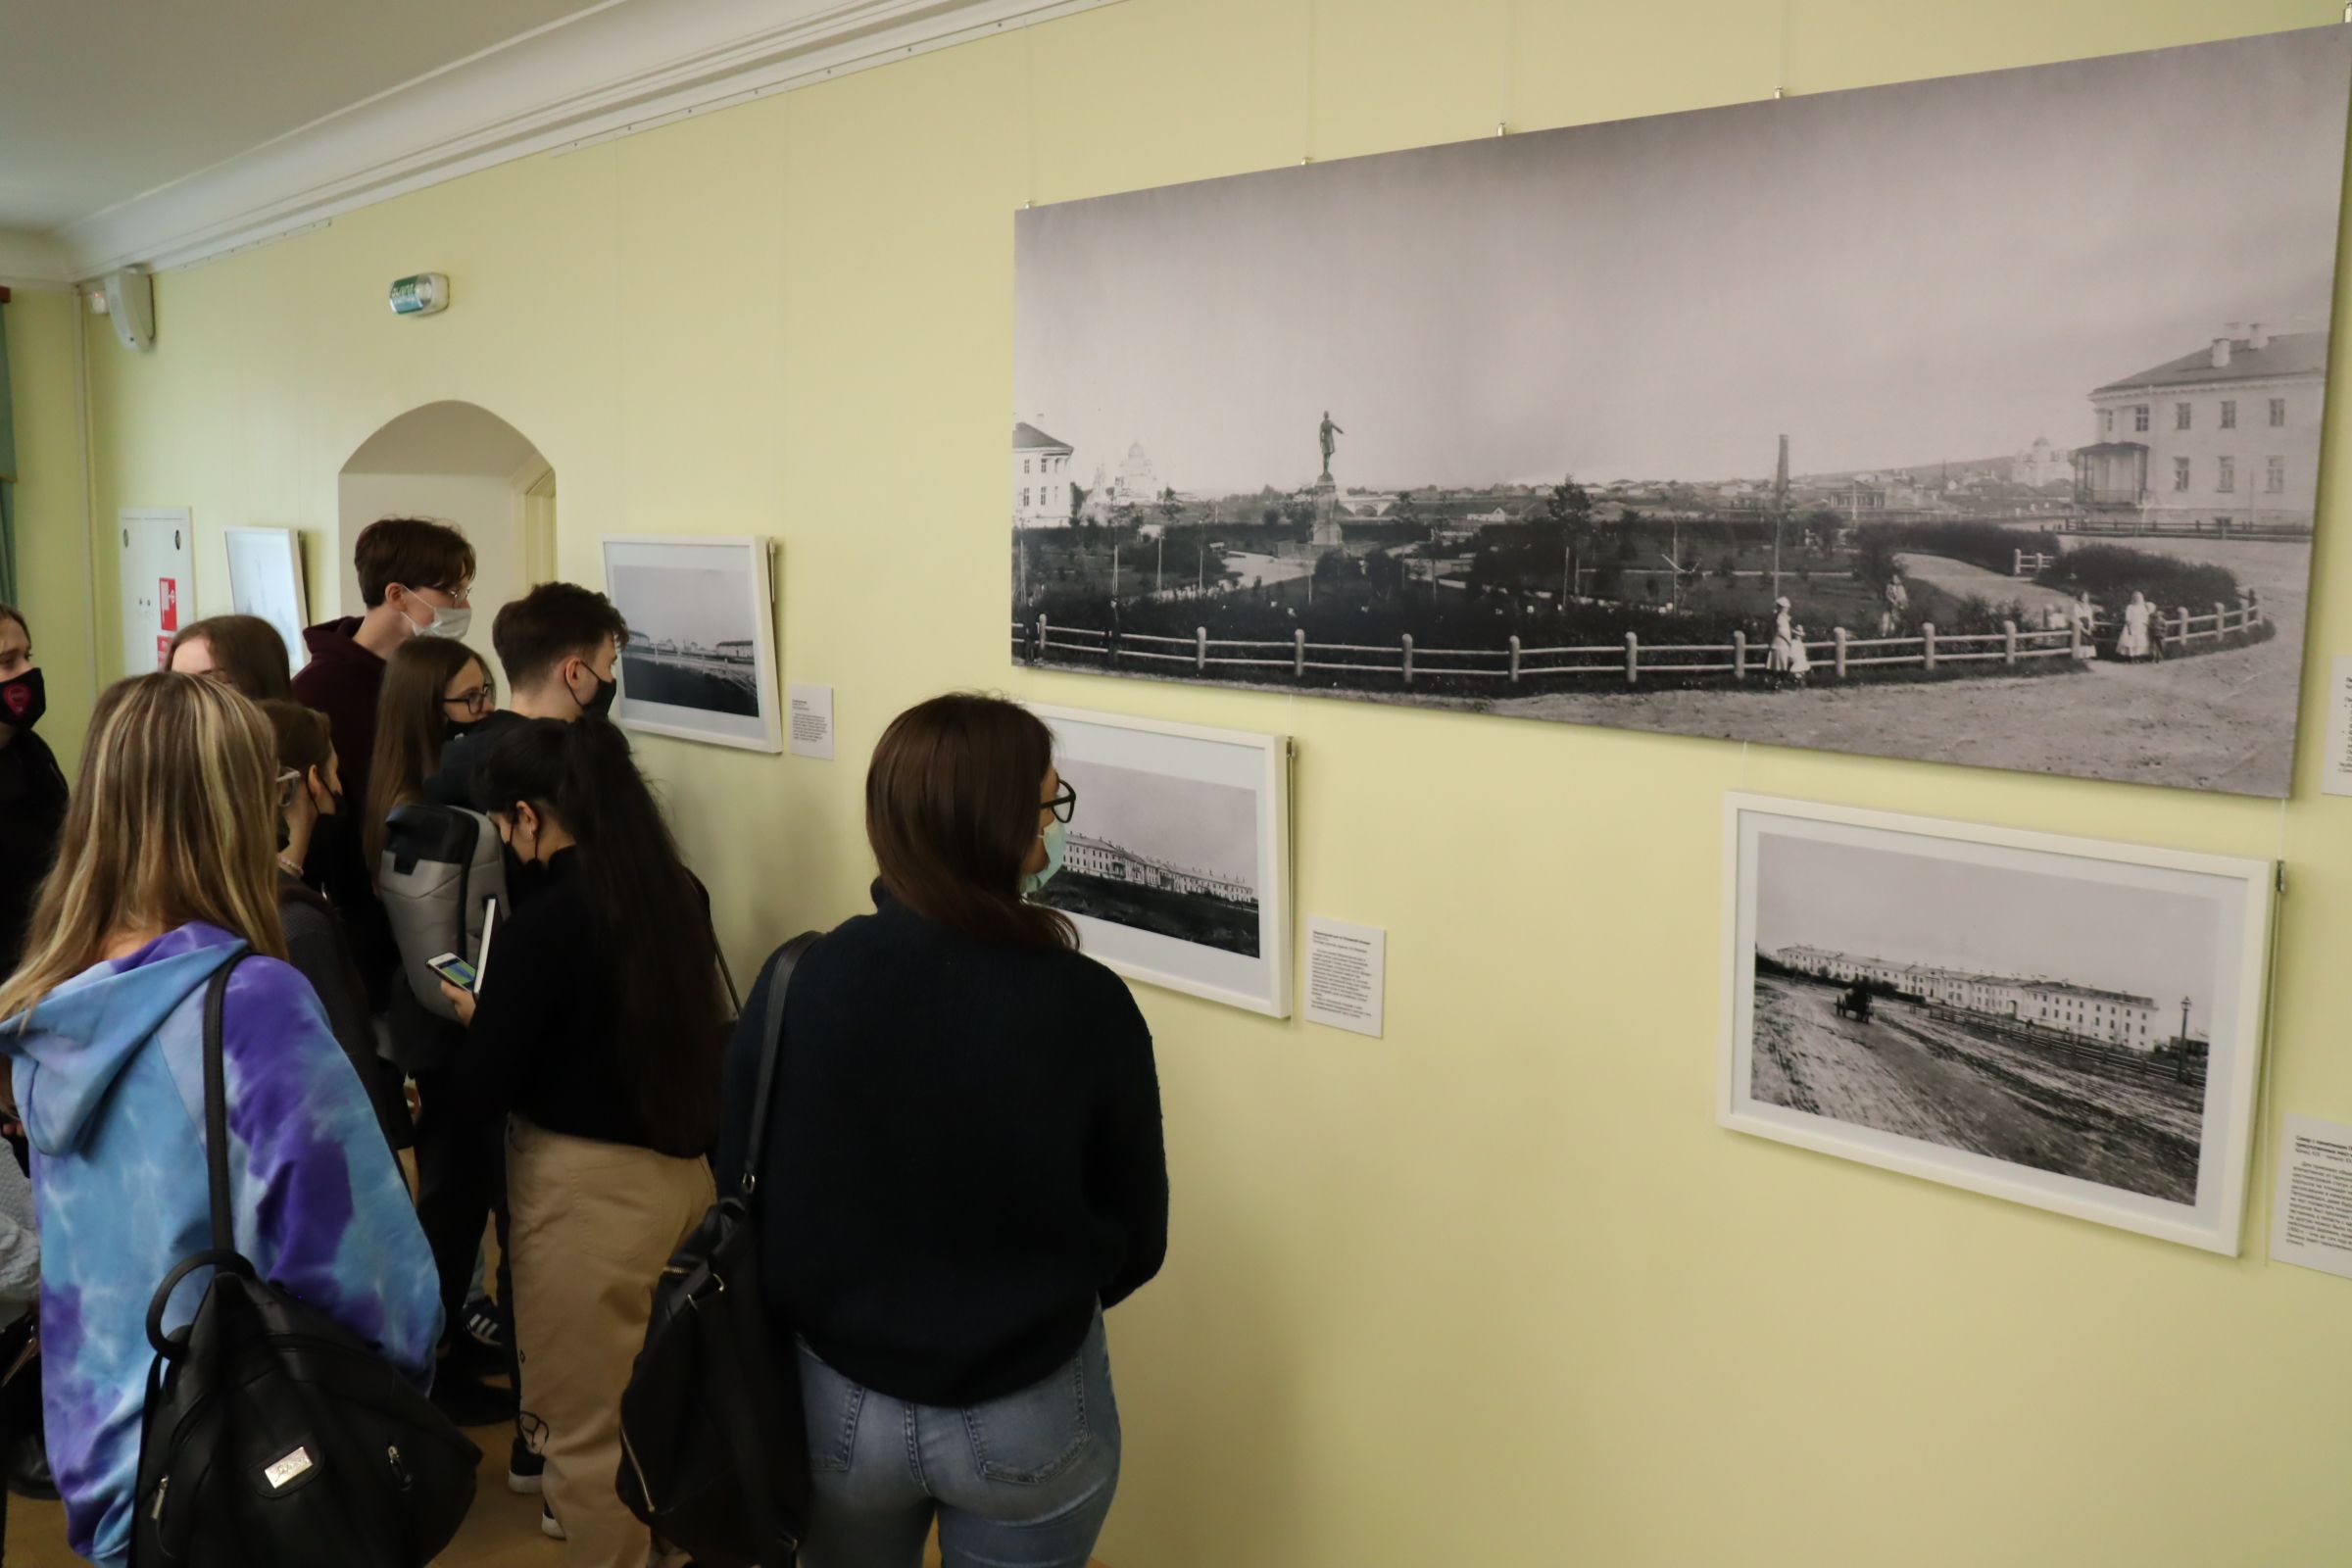 Näyttelyyn on koottu kaikki tähän päivään säilyneet Petroskoin Pietari Suuren patsaasta otetut valokuvat. Jotkut niistä ovat esillä ensimmäistä kertaa. 0+ Kuva: Sergei Karpov